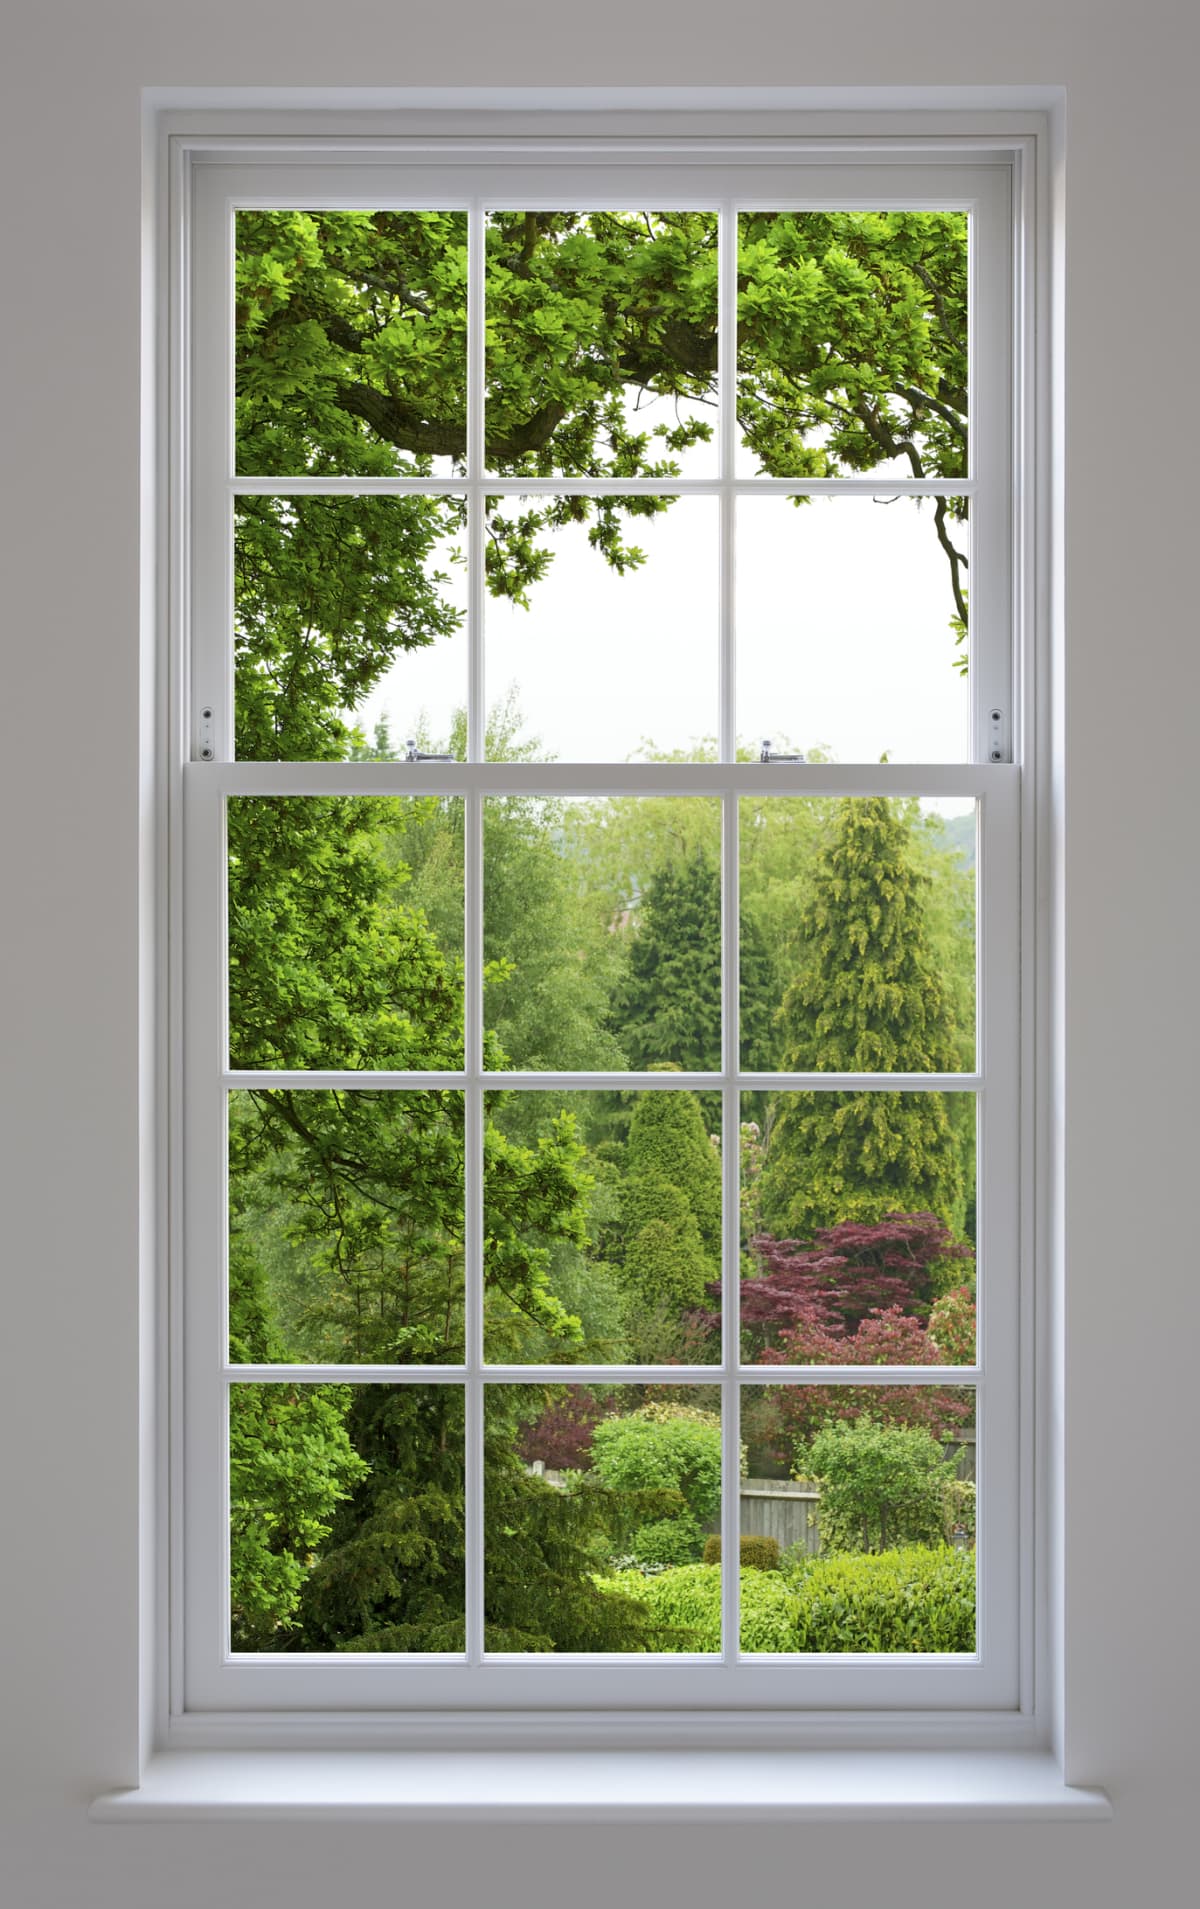 A paned window